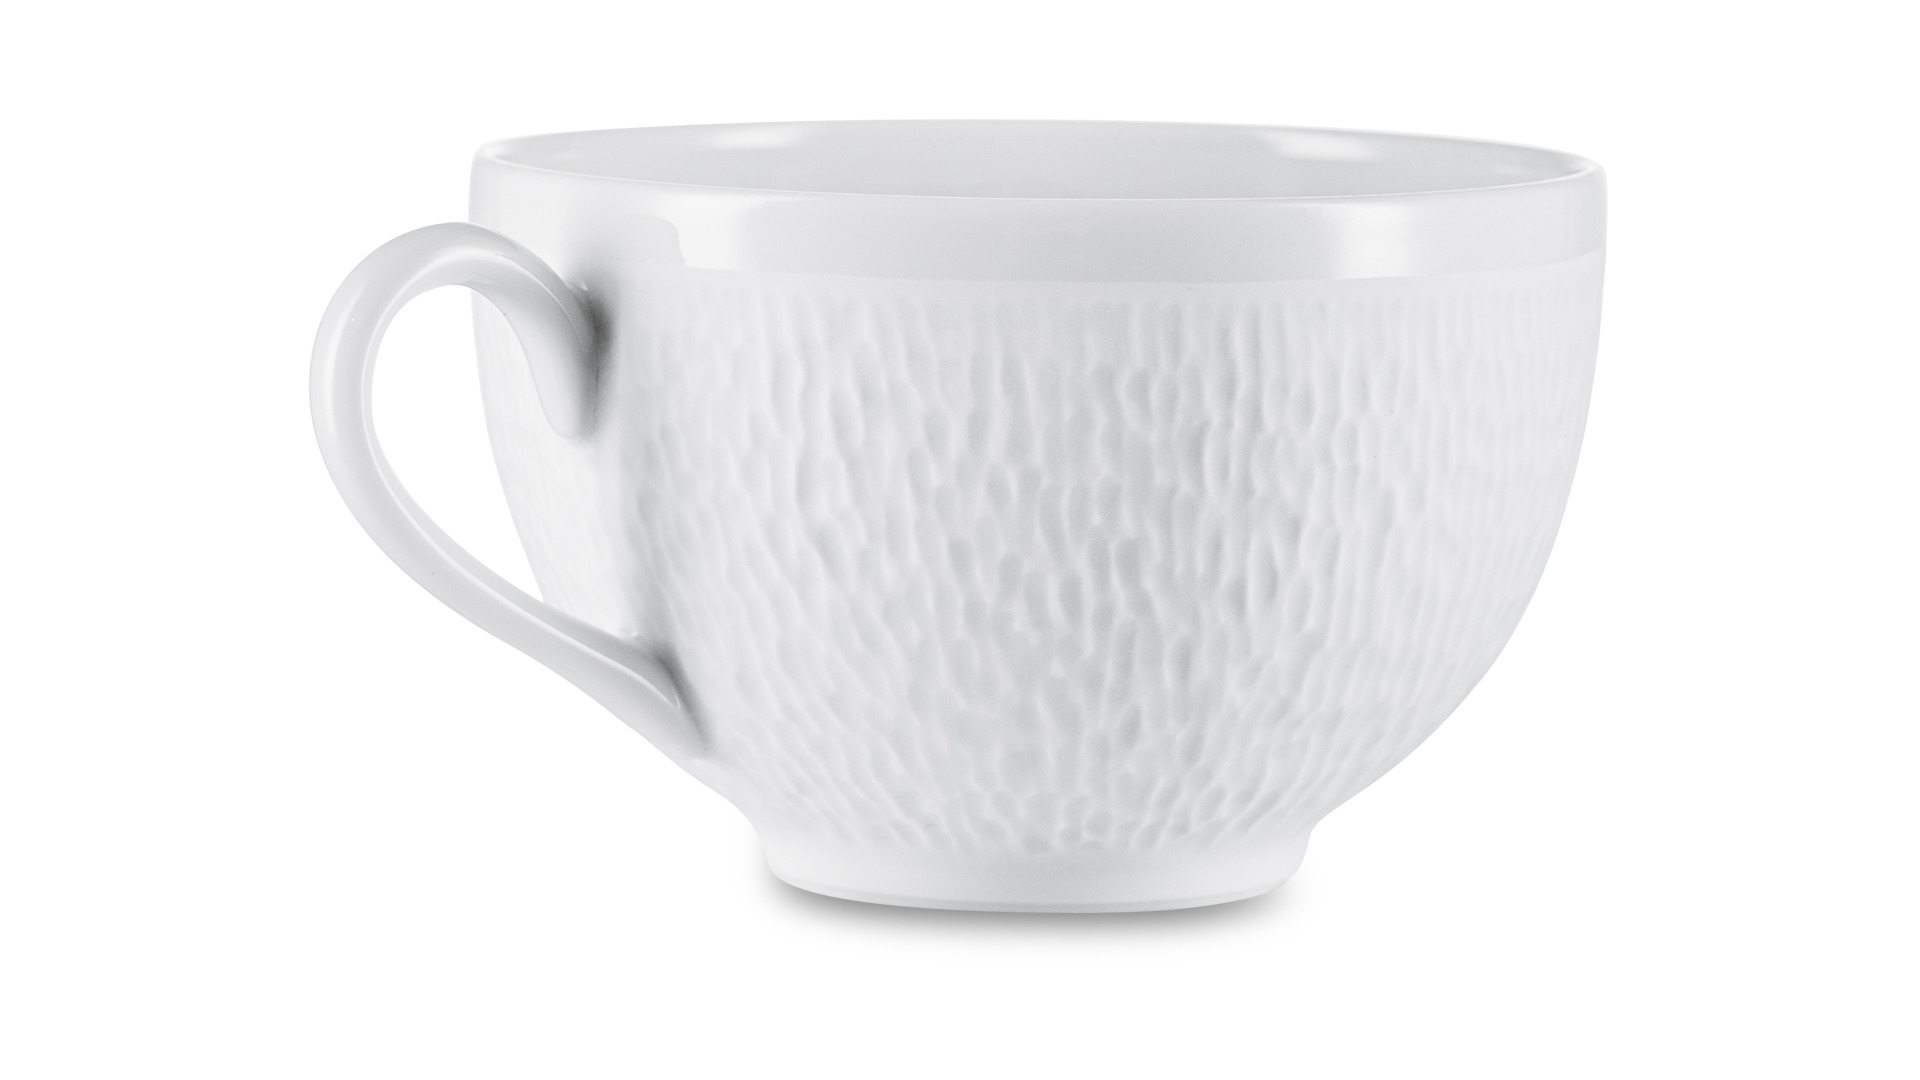 Чашка чайная с блюдцем Raynaud Минералы Песок  250 мл, фарфор